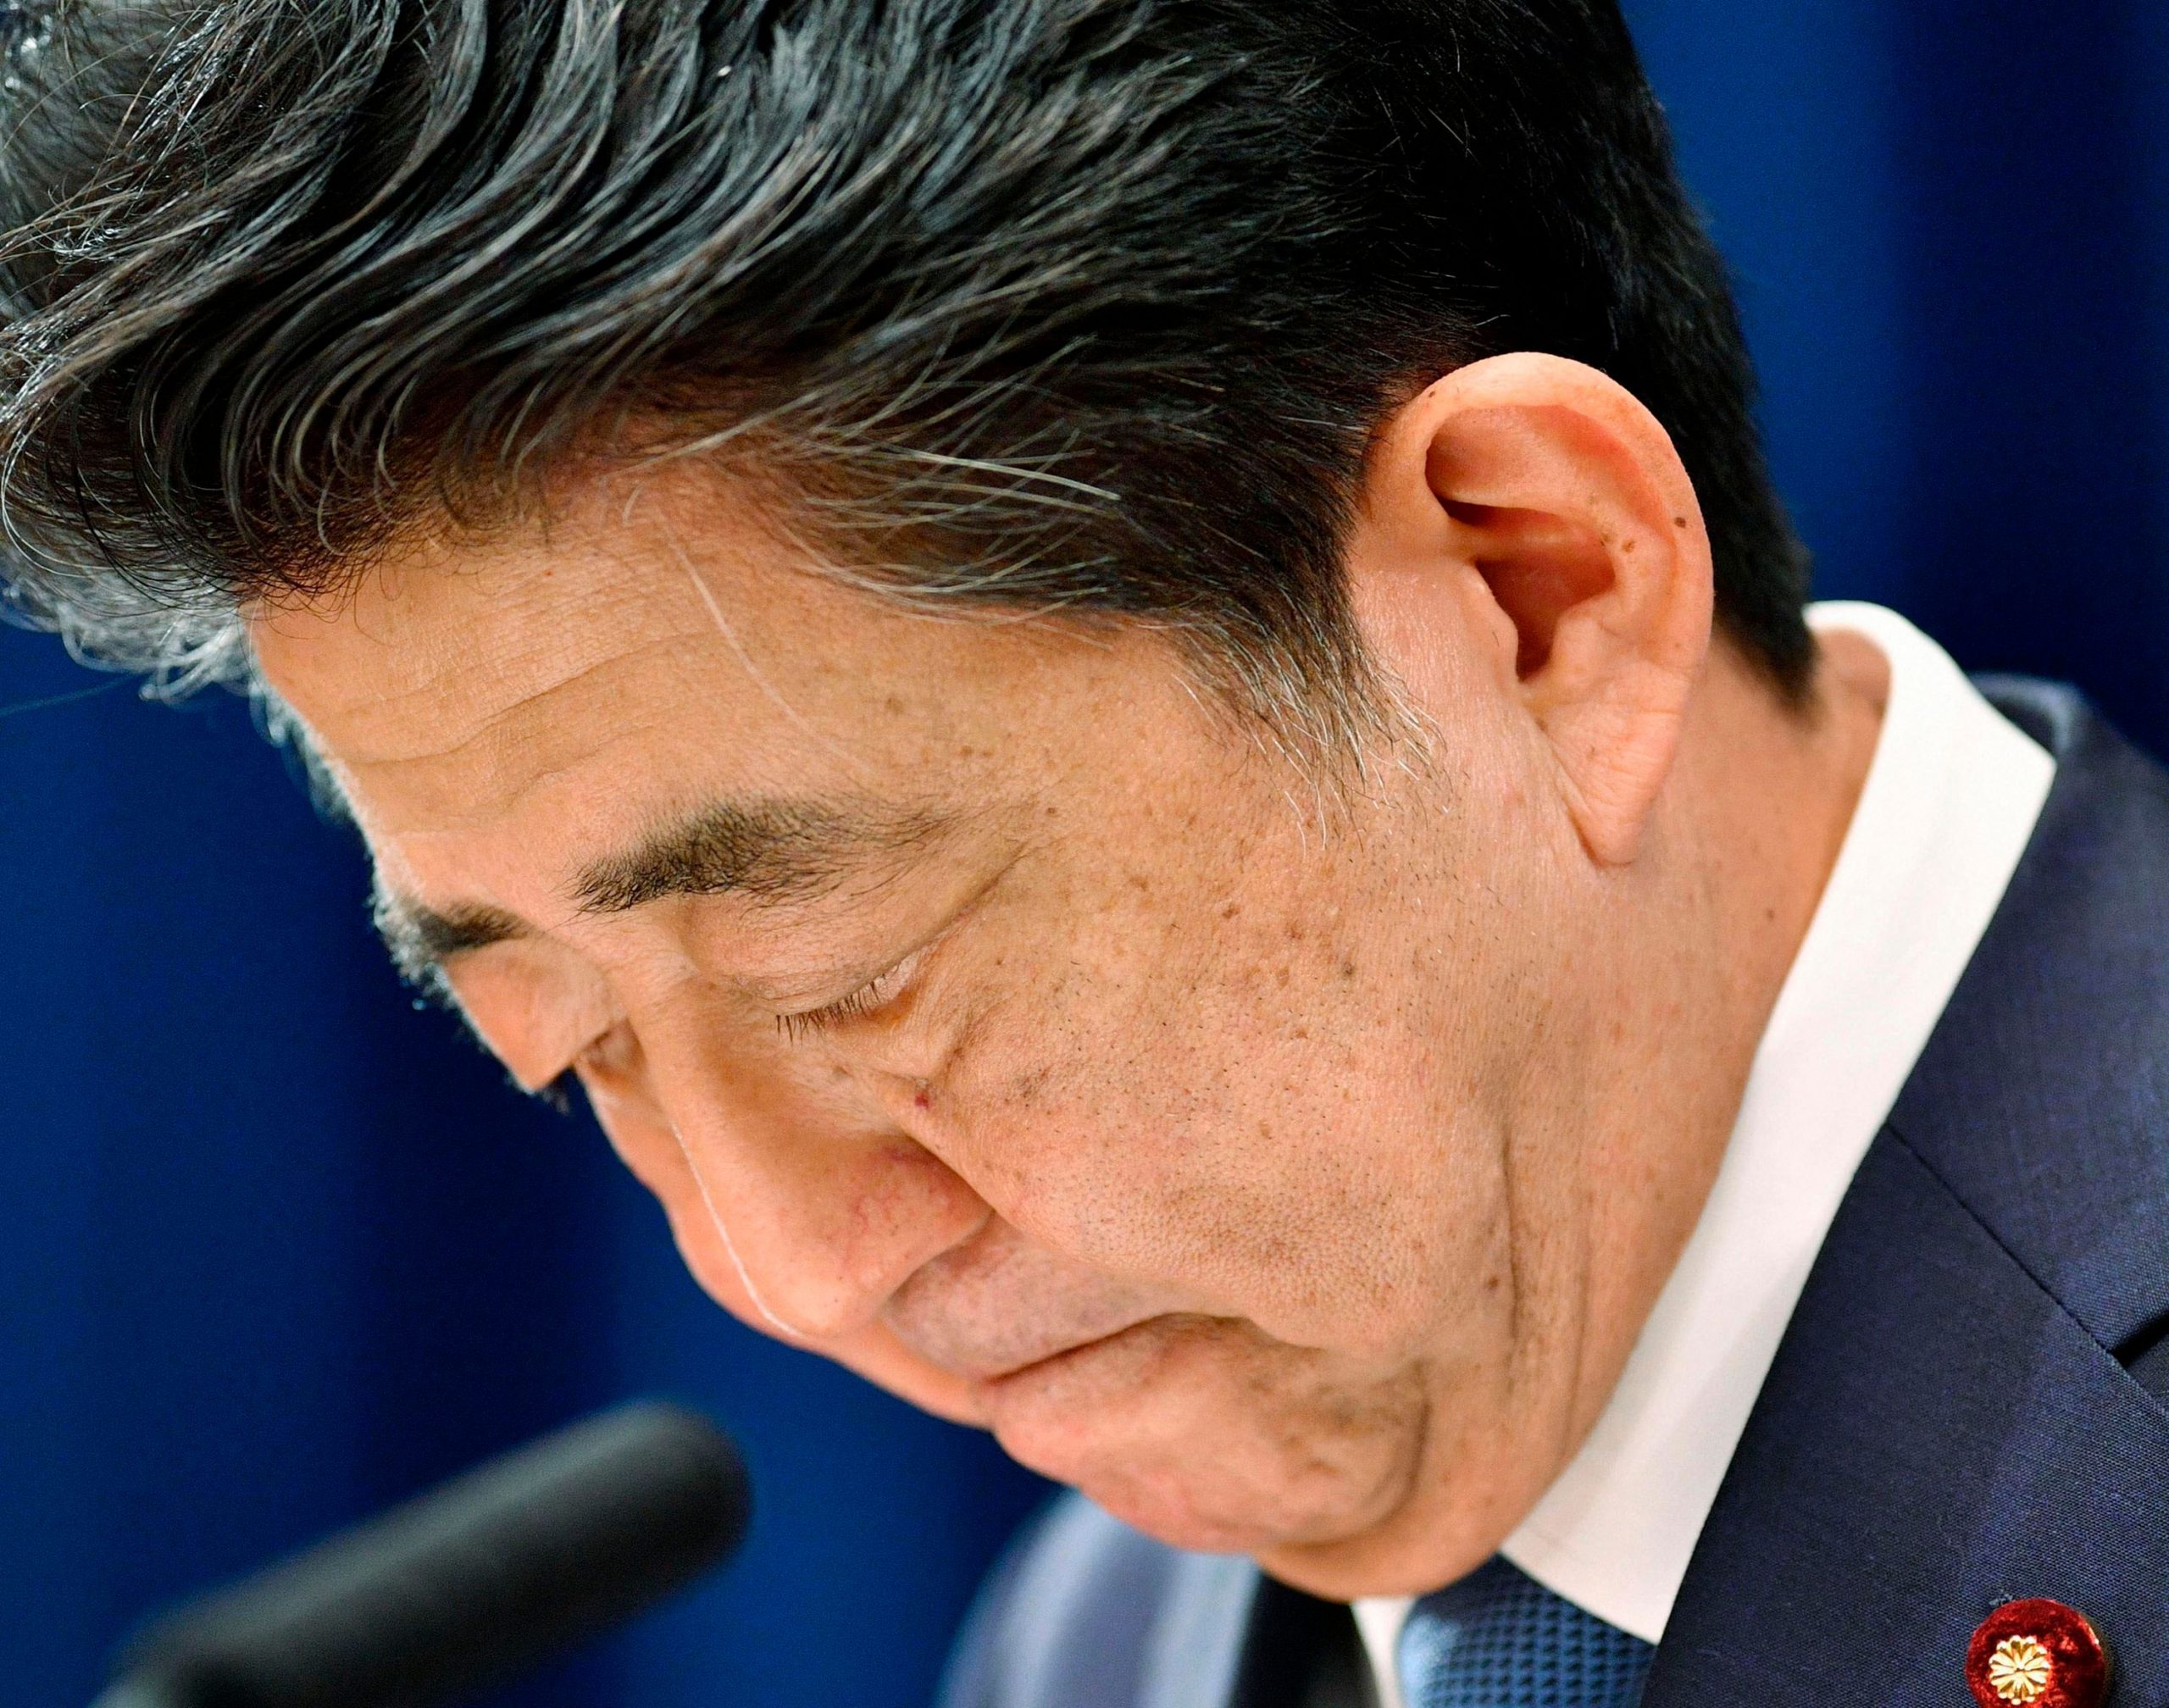 Officials arrest man for attempted murder after former Japan PM shot: Report